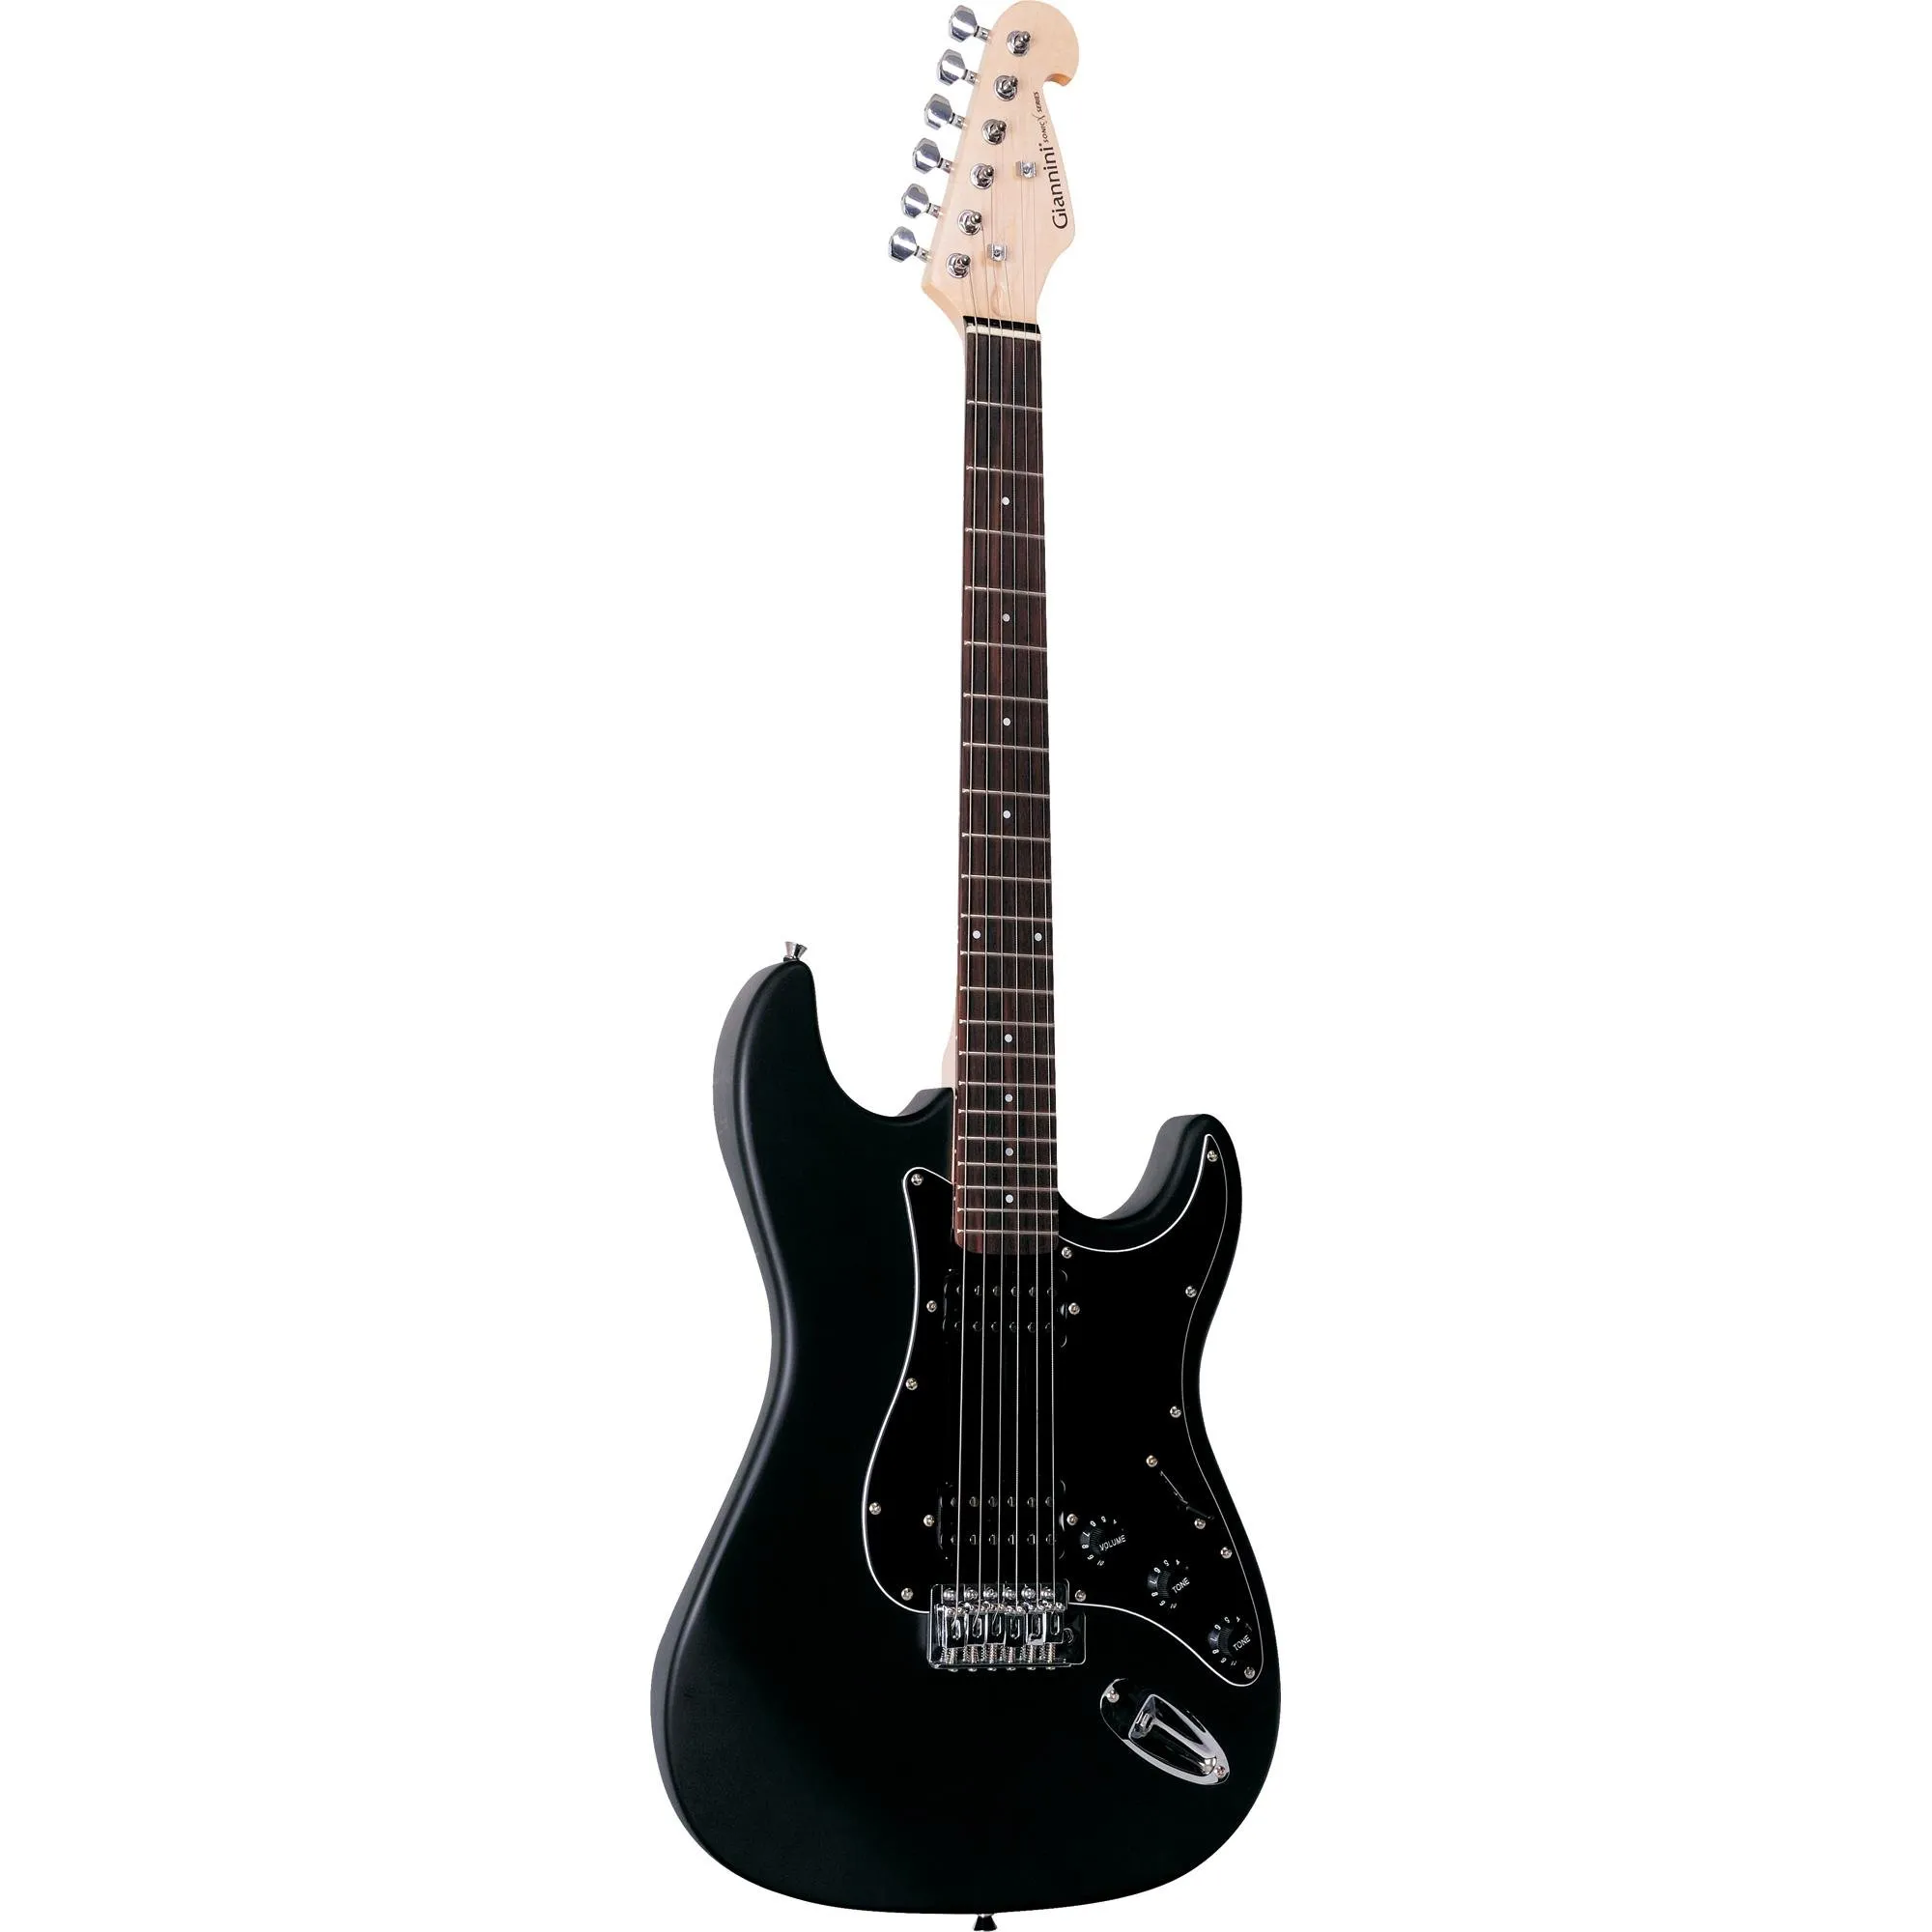 Guitarra Giannini G102 Preta Com Escudo Preto por 707,99 à vista no boleto/pix ou parcele em até 10x sem juros. Compre na loja Mundomax!